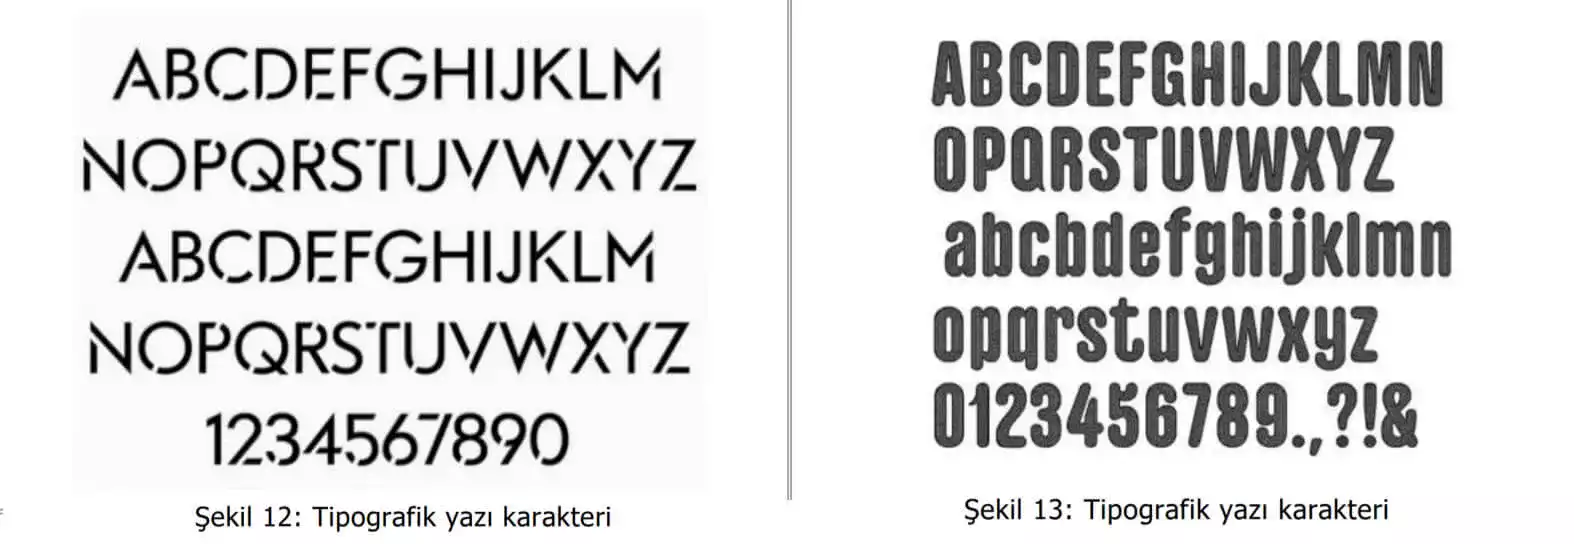 tipografik yazı karakter örnekleri-Çiğli Patent